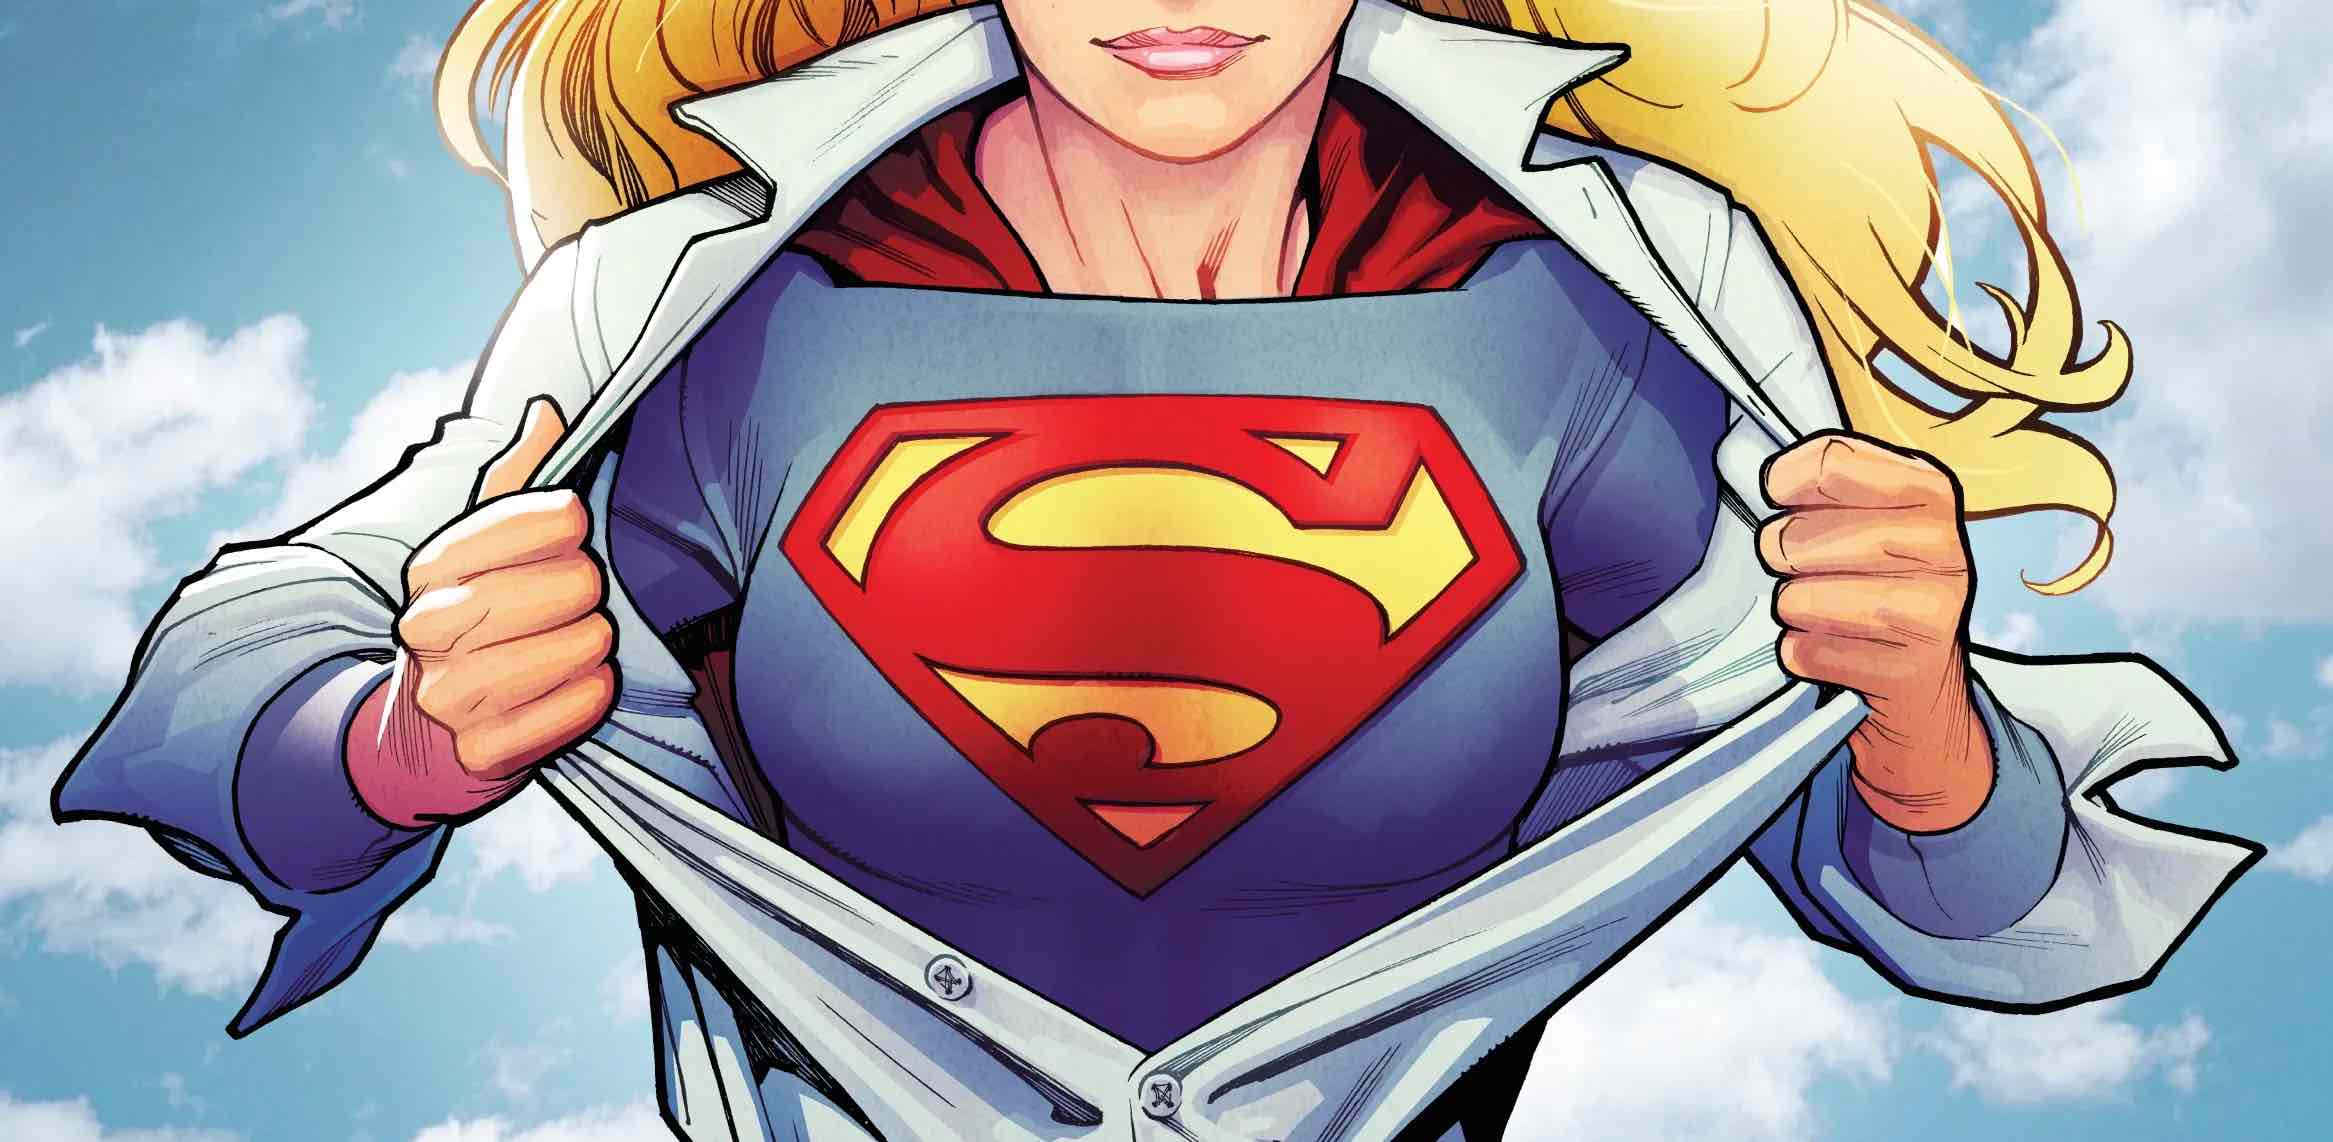 ۱۰ باری که سوپرگرل ثابت کرد از سوپرمن قوی تر است